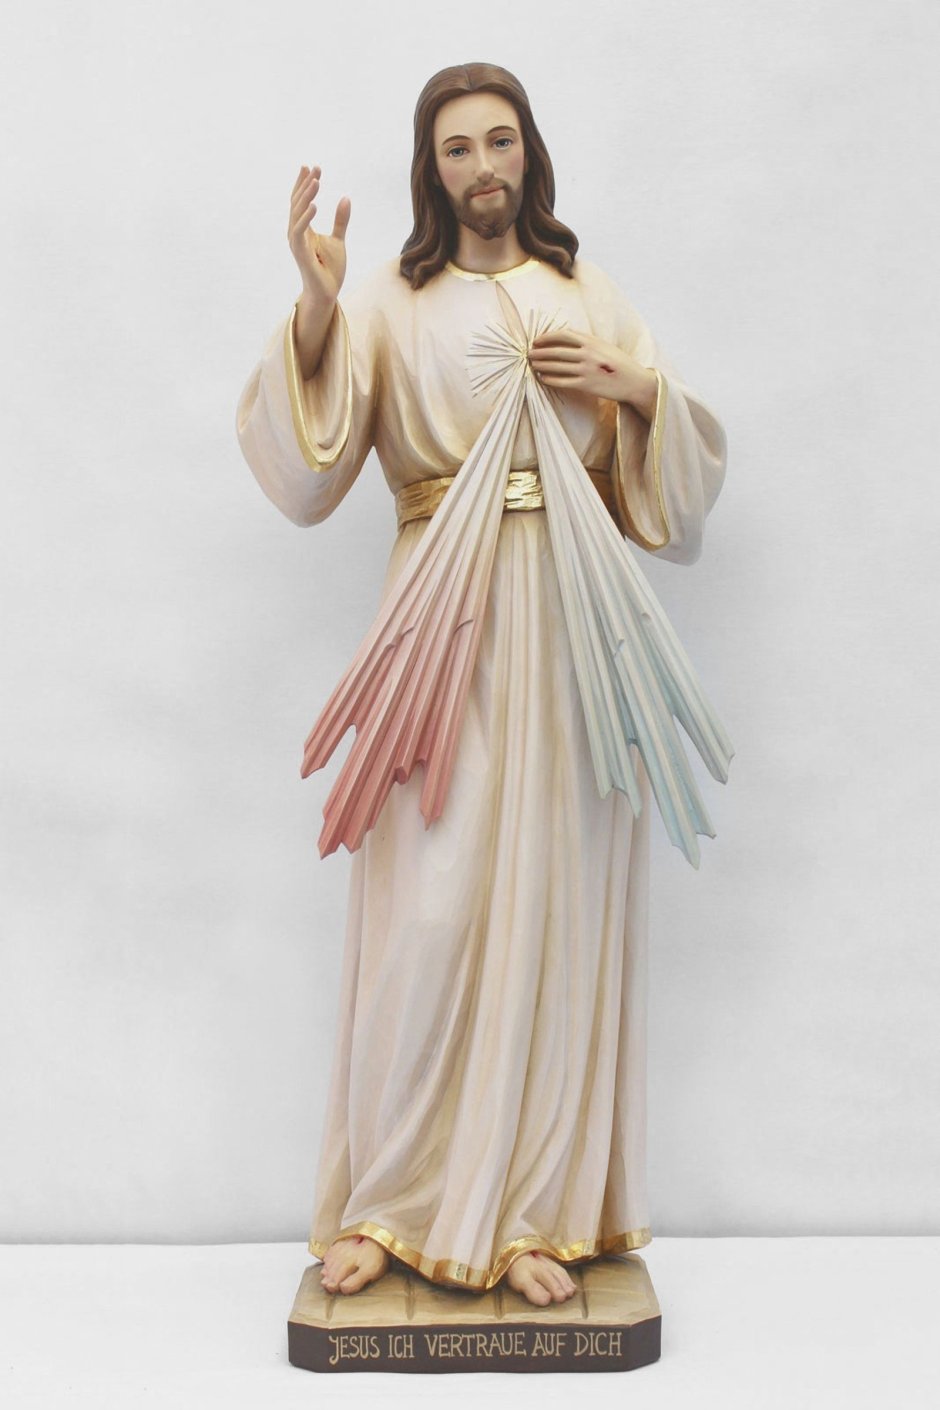 Скульптура Христа из полимерной глины